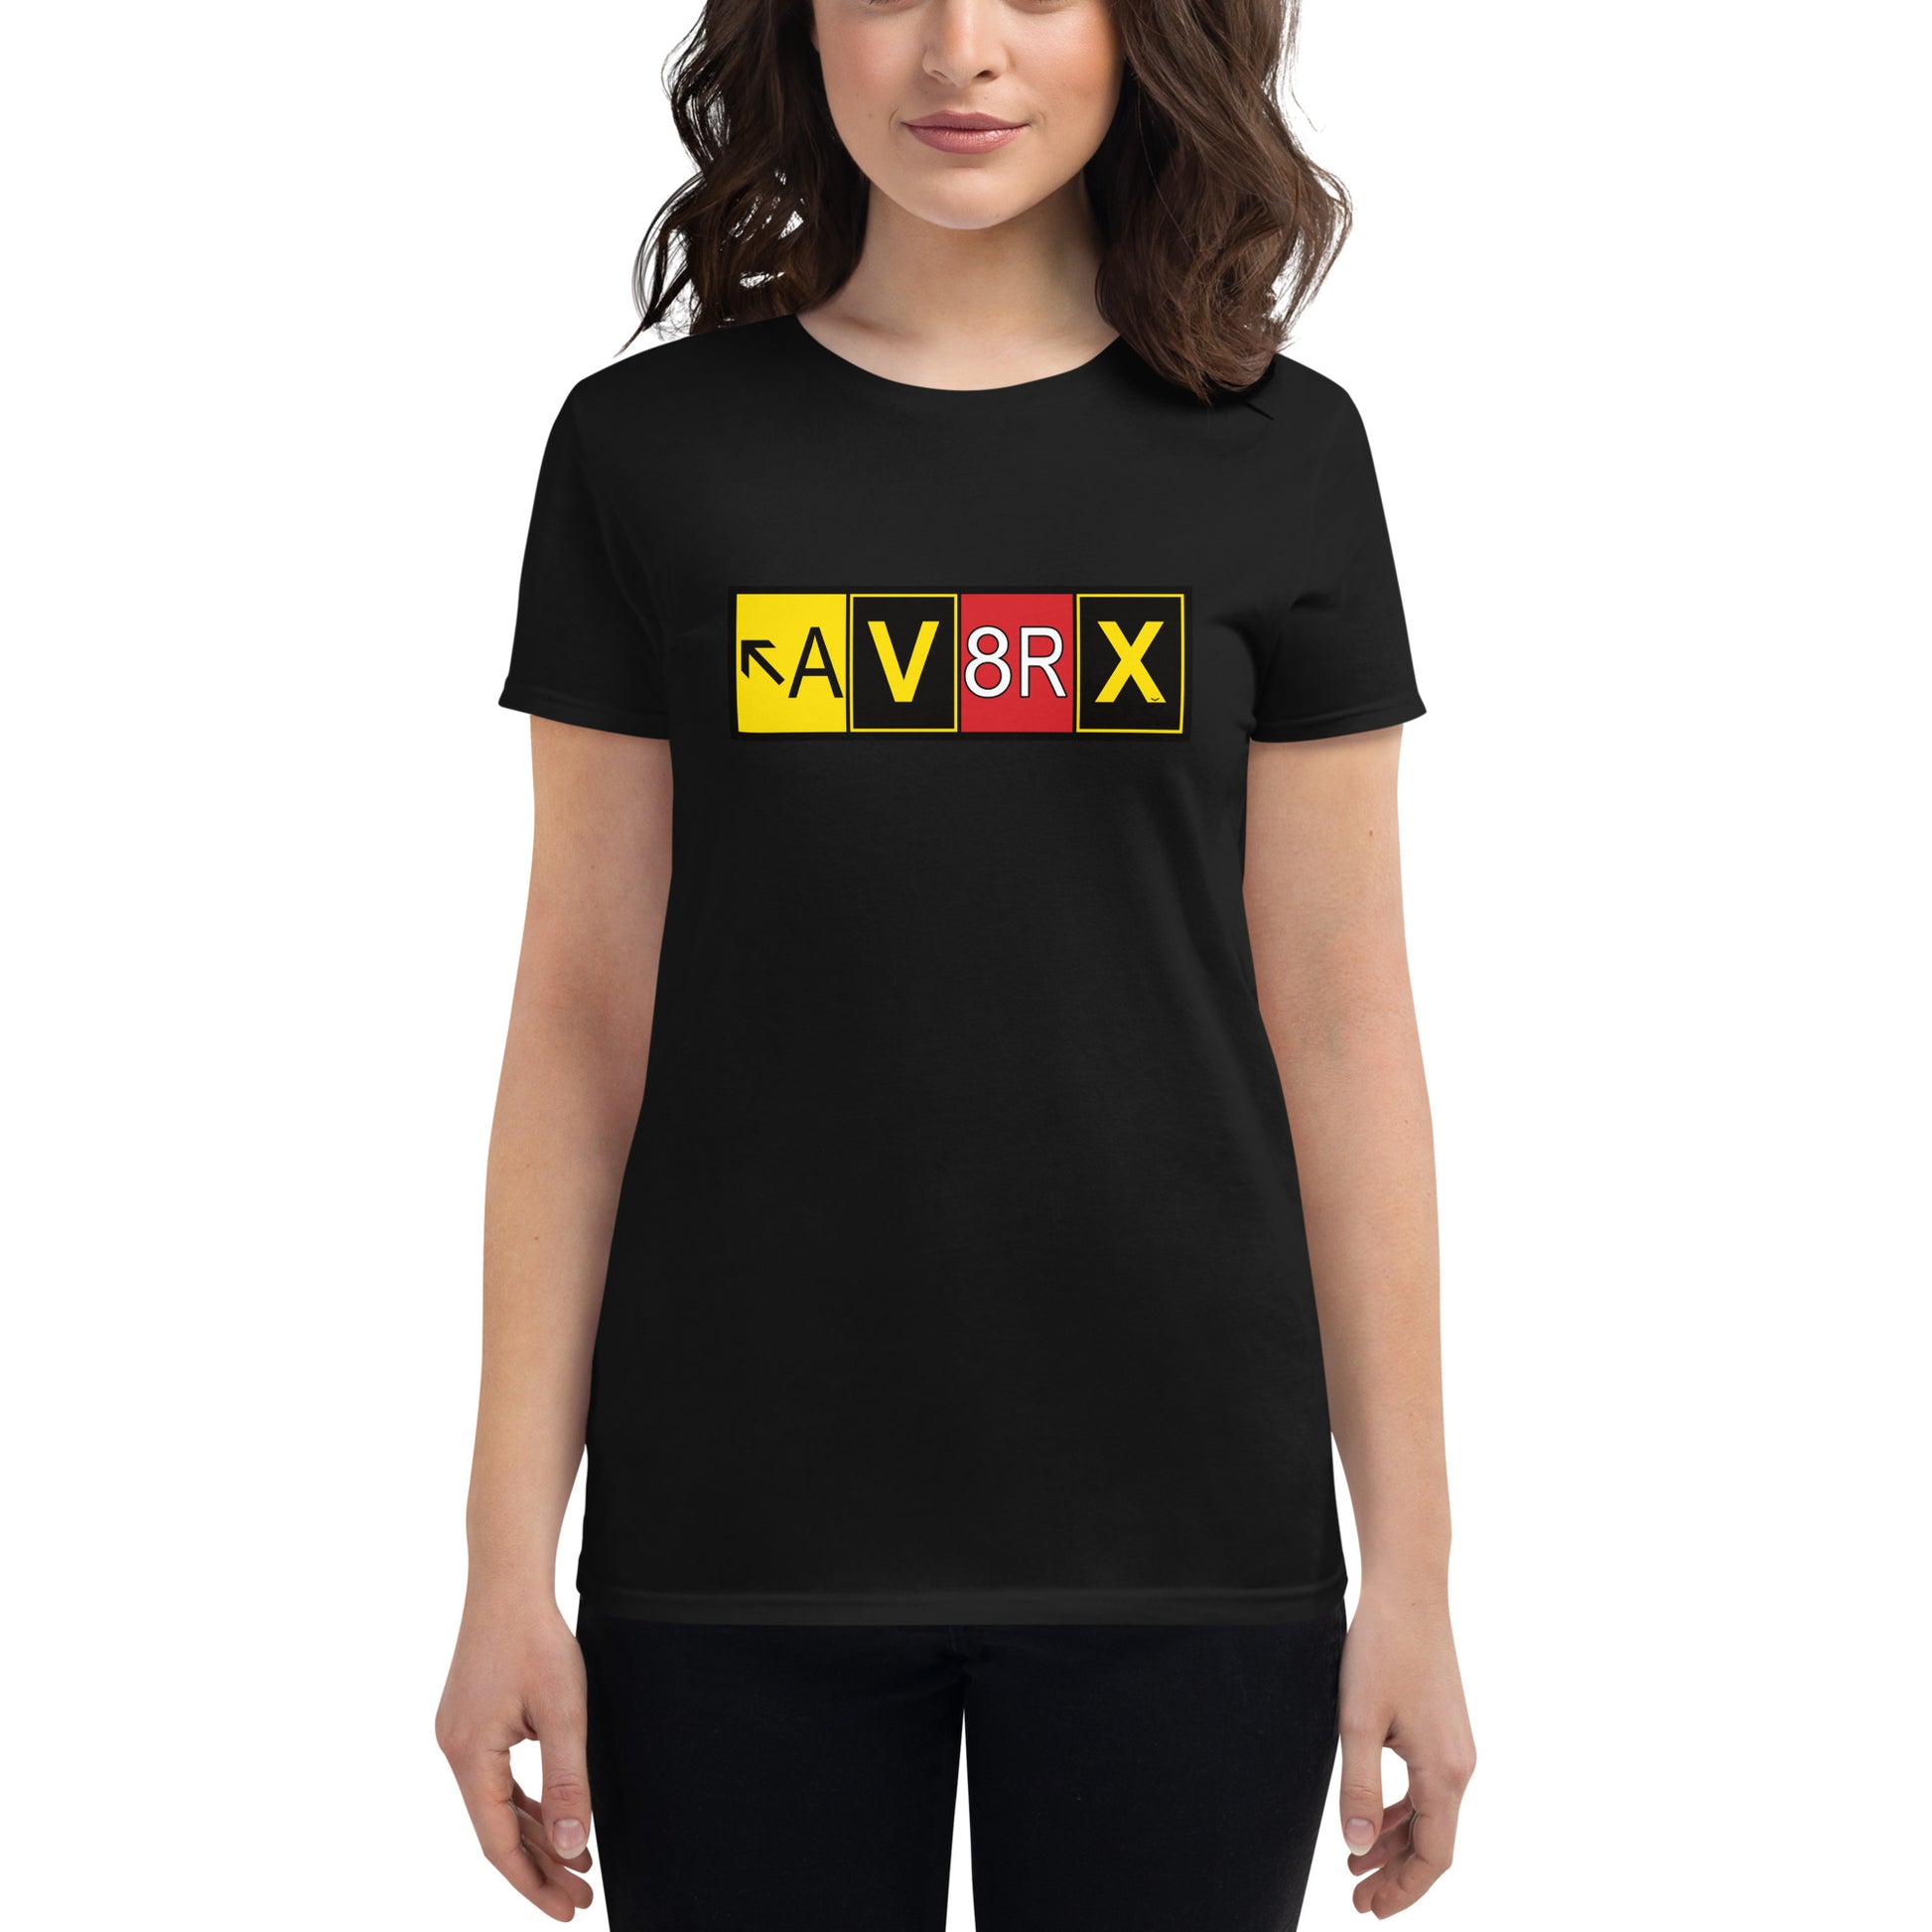 Aviatrix women's short sleeve t-shirt